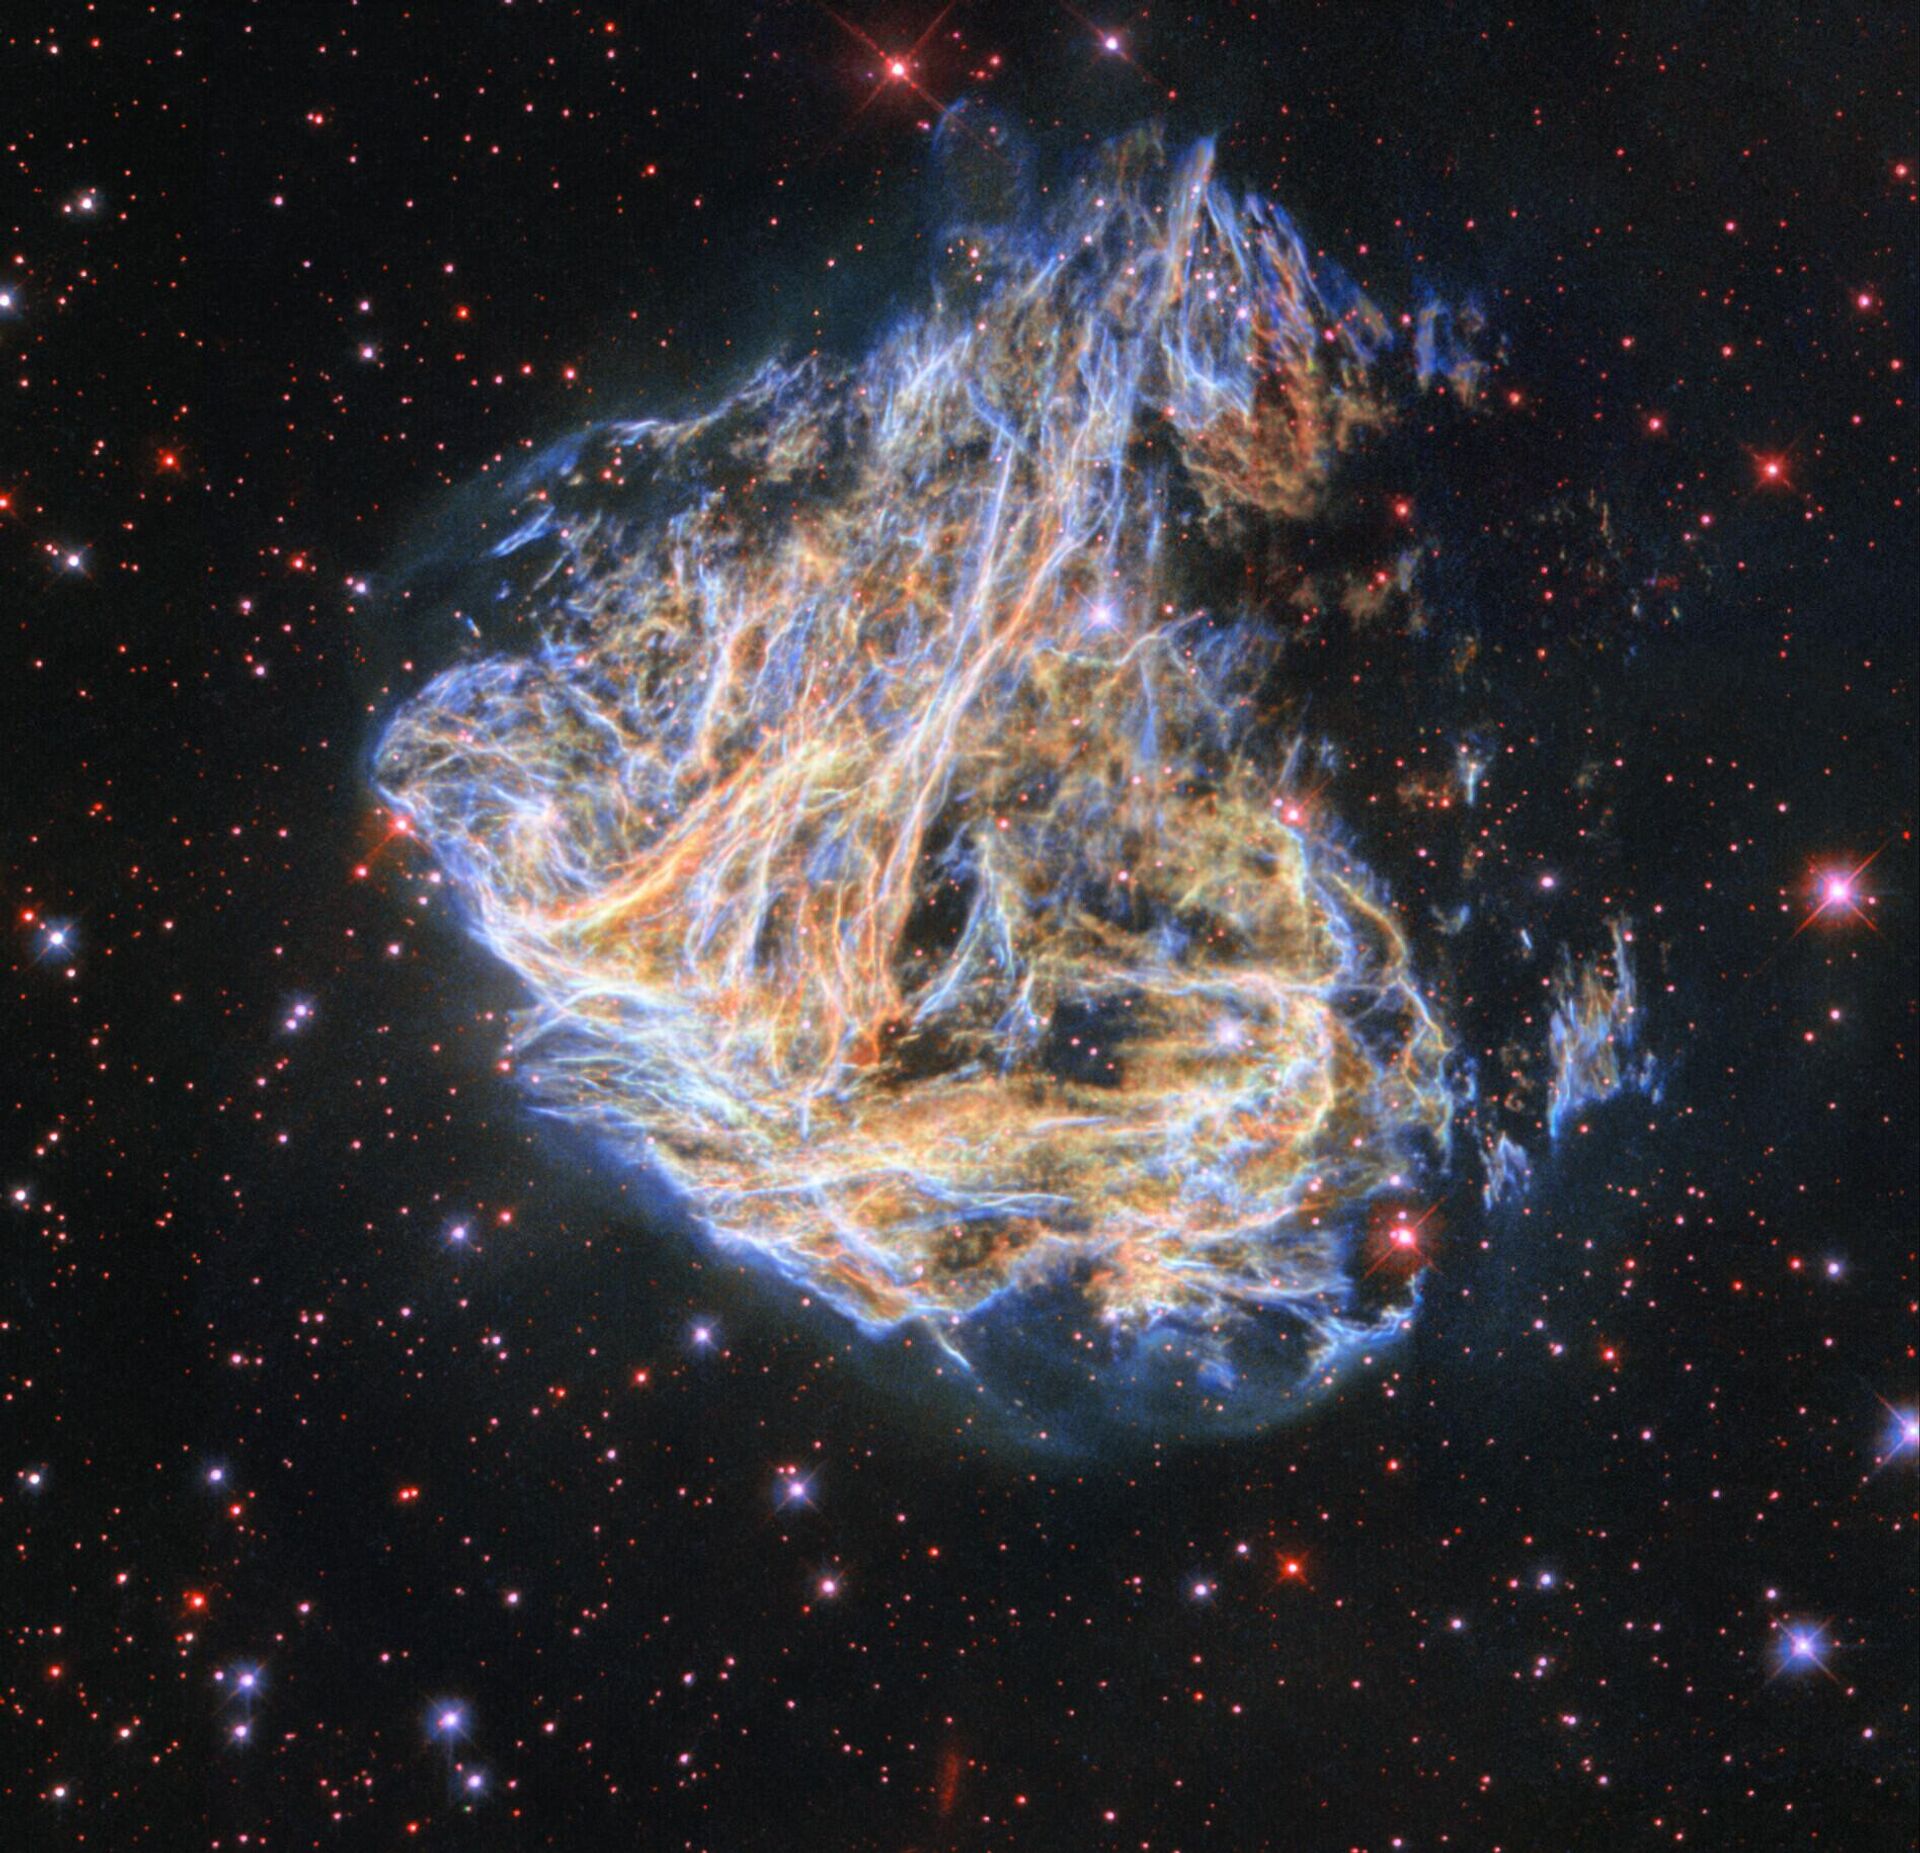 O Telescópio Espacial Hubble da NASA registrou os fragmentos da remanescente de supernova colorida DEM L 190 - Sputnik Србија, 1920, 28.11.2022